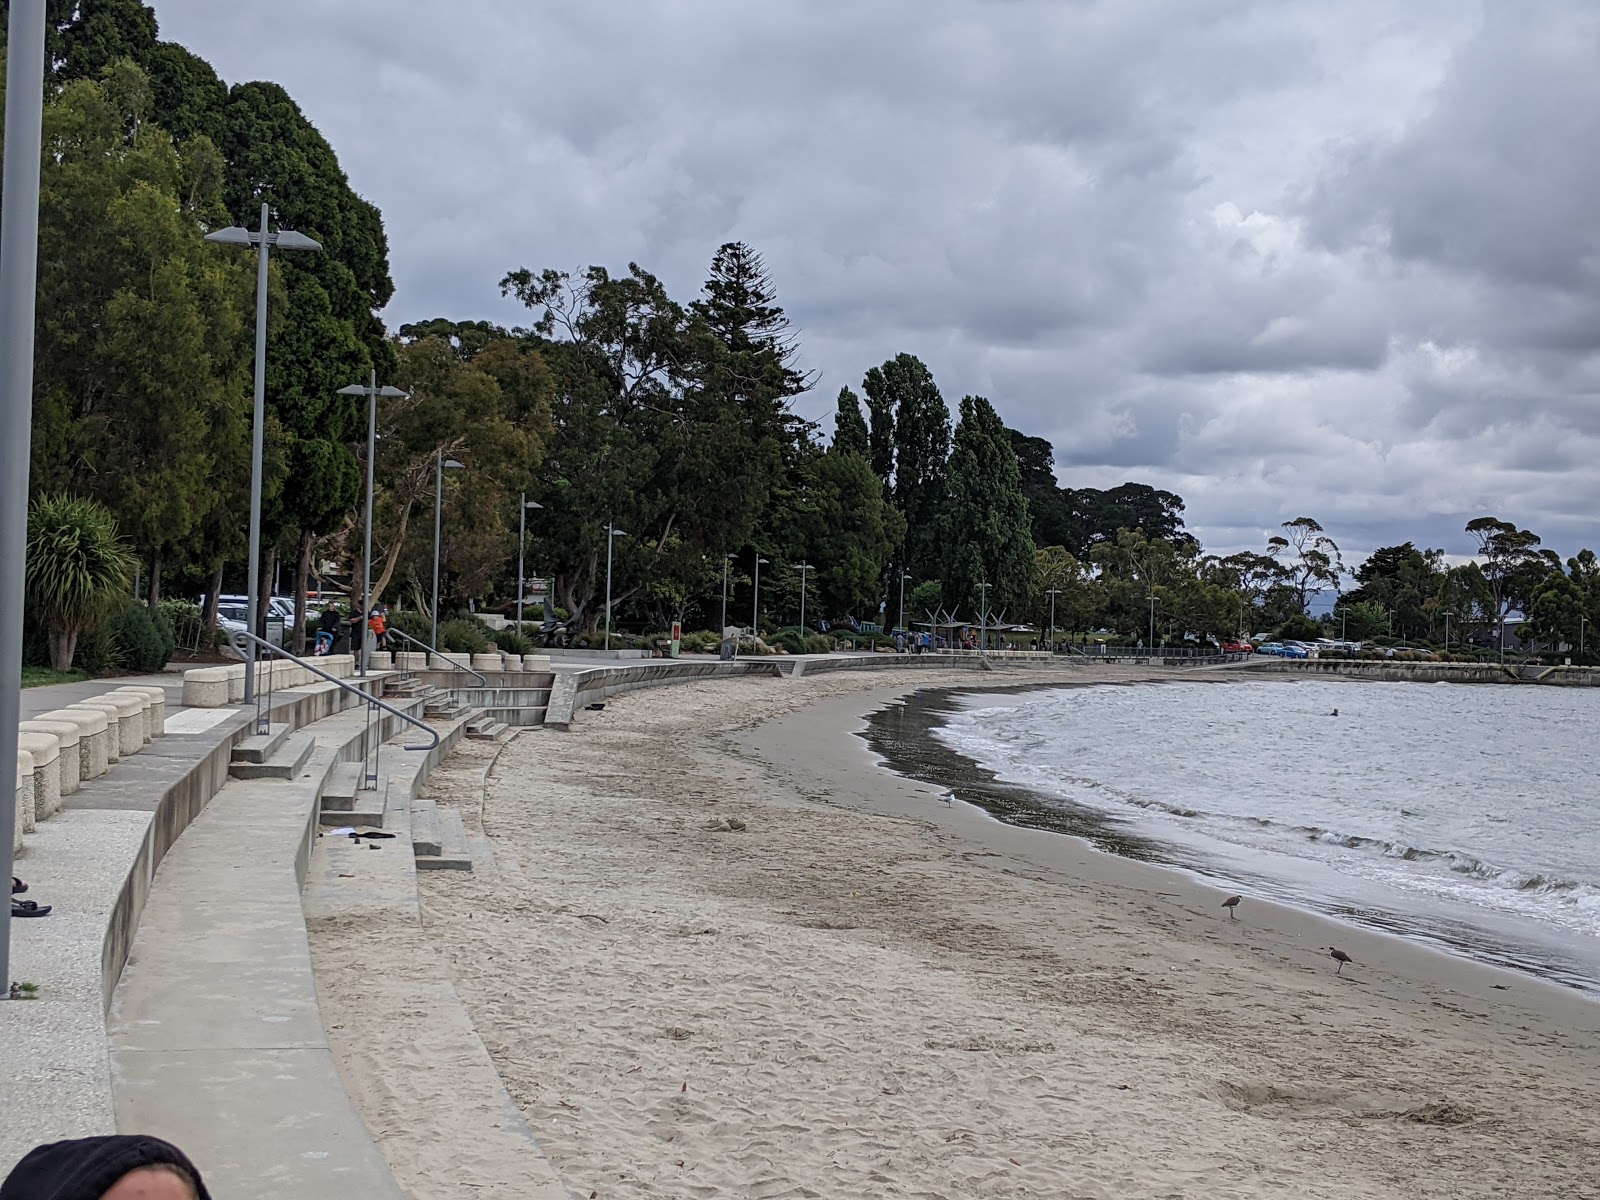 Fotografie cu Long Beach Sandy Bay cu nivelul de curățenie înalt